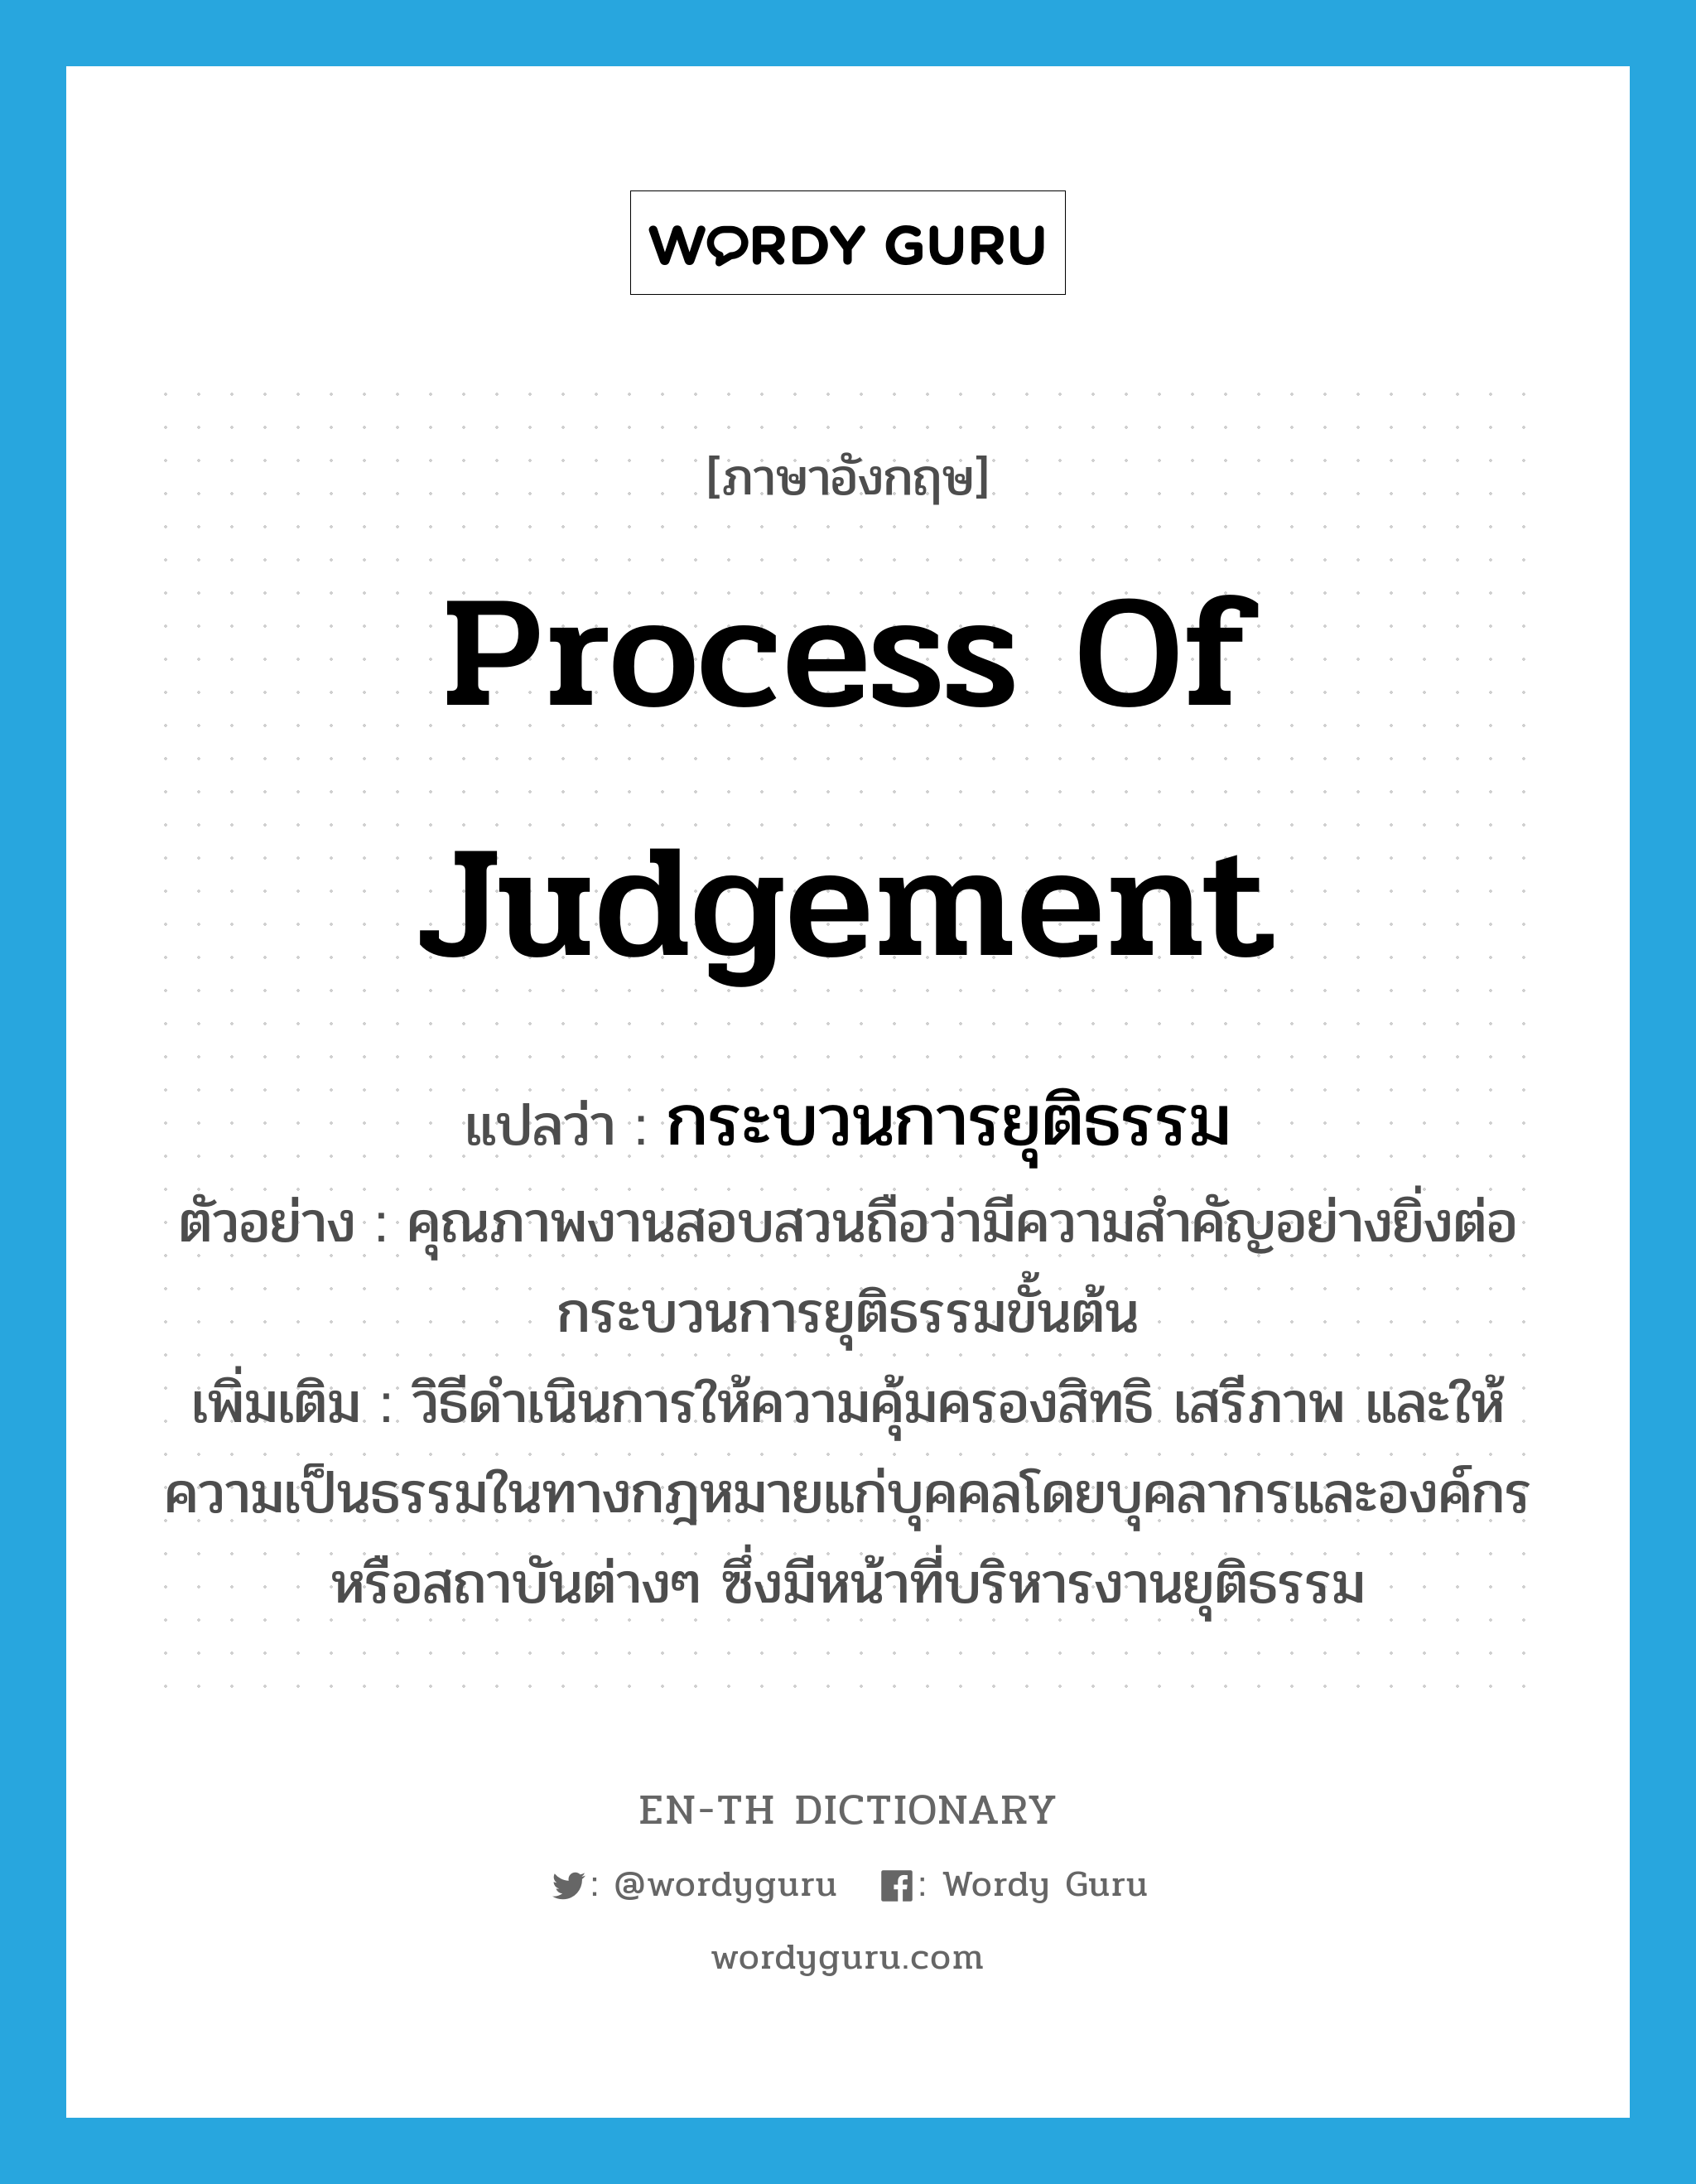 process of judgement แปลว่า?, คำศัพท์ภาษาอังกฤษ process of judgement แปลว่า กระบวนการยุติธรรม ประเภท N ตัวอย่าง คุณภาพงานสอบสวนถือว่ามีความสำคัญอย่างยิ่งต่อกระบวนการยุติธรรมขั้นต้น เพิ่มเติม วิธีดำเนินการให้ความคุ้มครองสิทธิ เสรีภาพ และให้ความเป็นธรรมในทางกฎหมายแก่บุคคลโดยบุคลากรและองค์กรหรือสถาบันต่างๆ ซึ่งมีหน้าที่บริหารงานยุติธรรม หมวด N